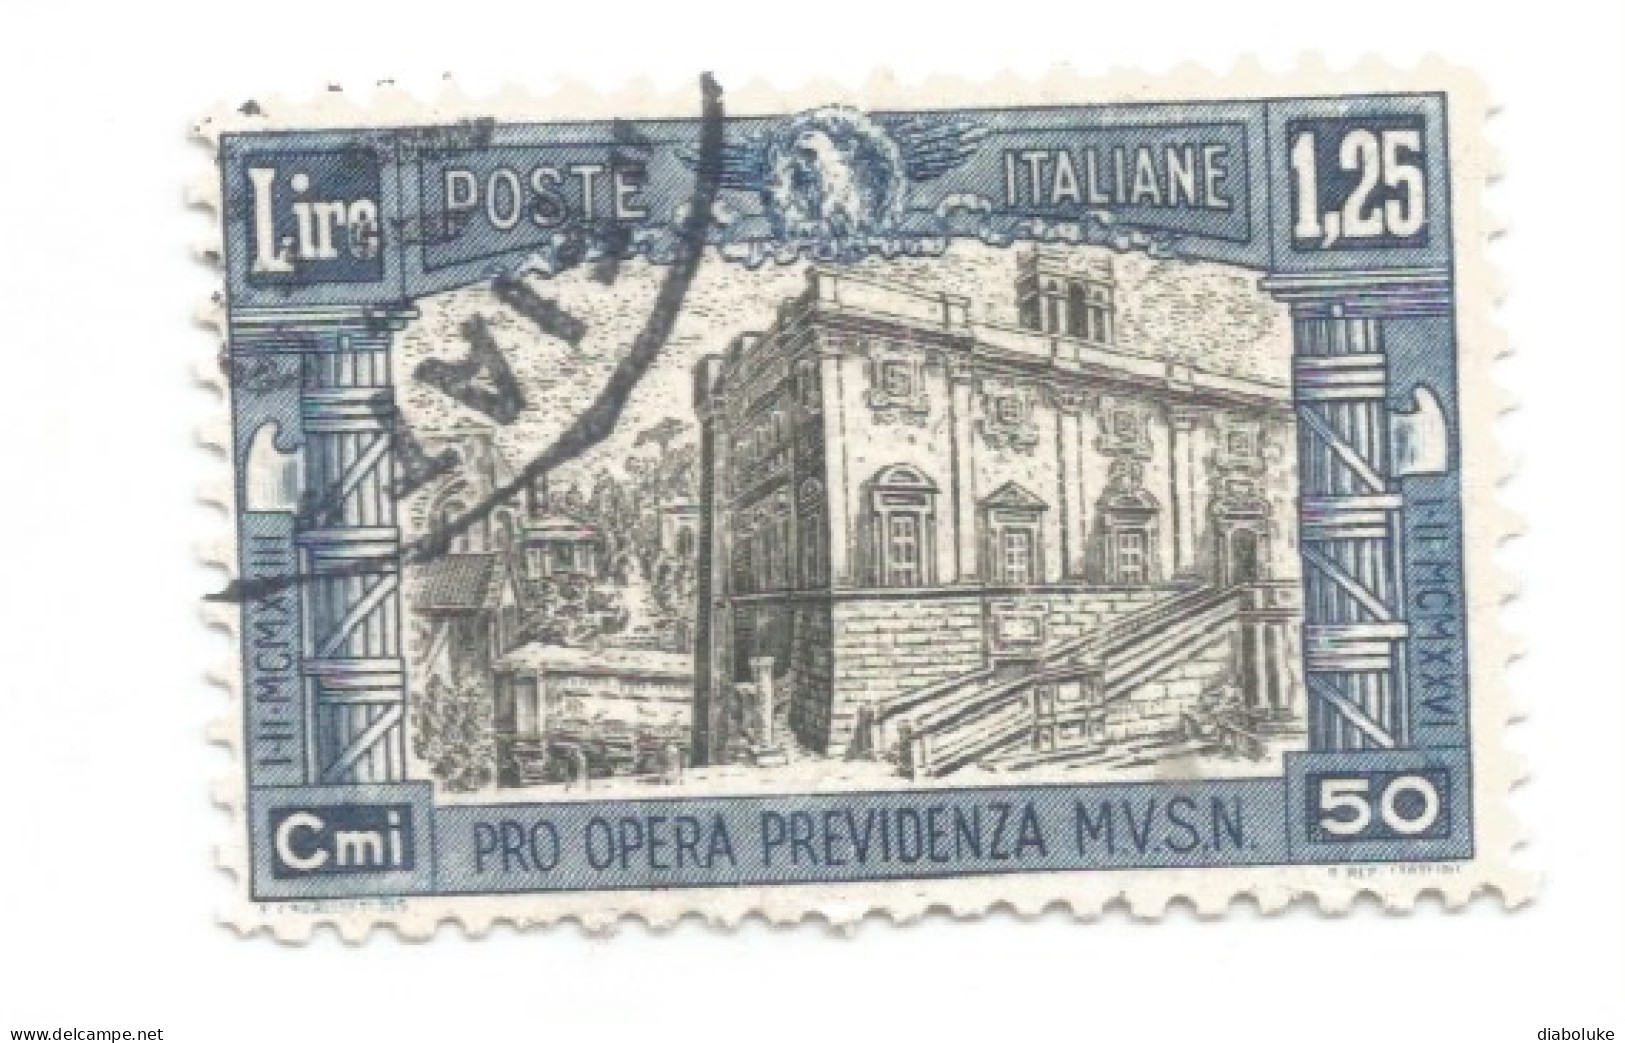 (REGNO D'ITALIA) 1928, PRO OPERA PREVIDENZA MILIZIA, 2° EMISSIONE - Serie Di 4 Francobolli Usati, Annulli Da Periziare - Oblitérés